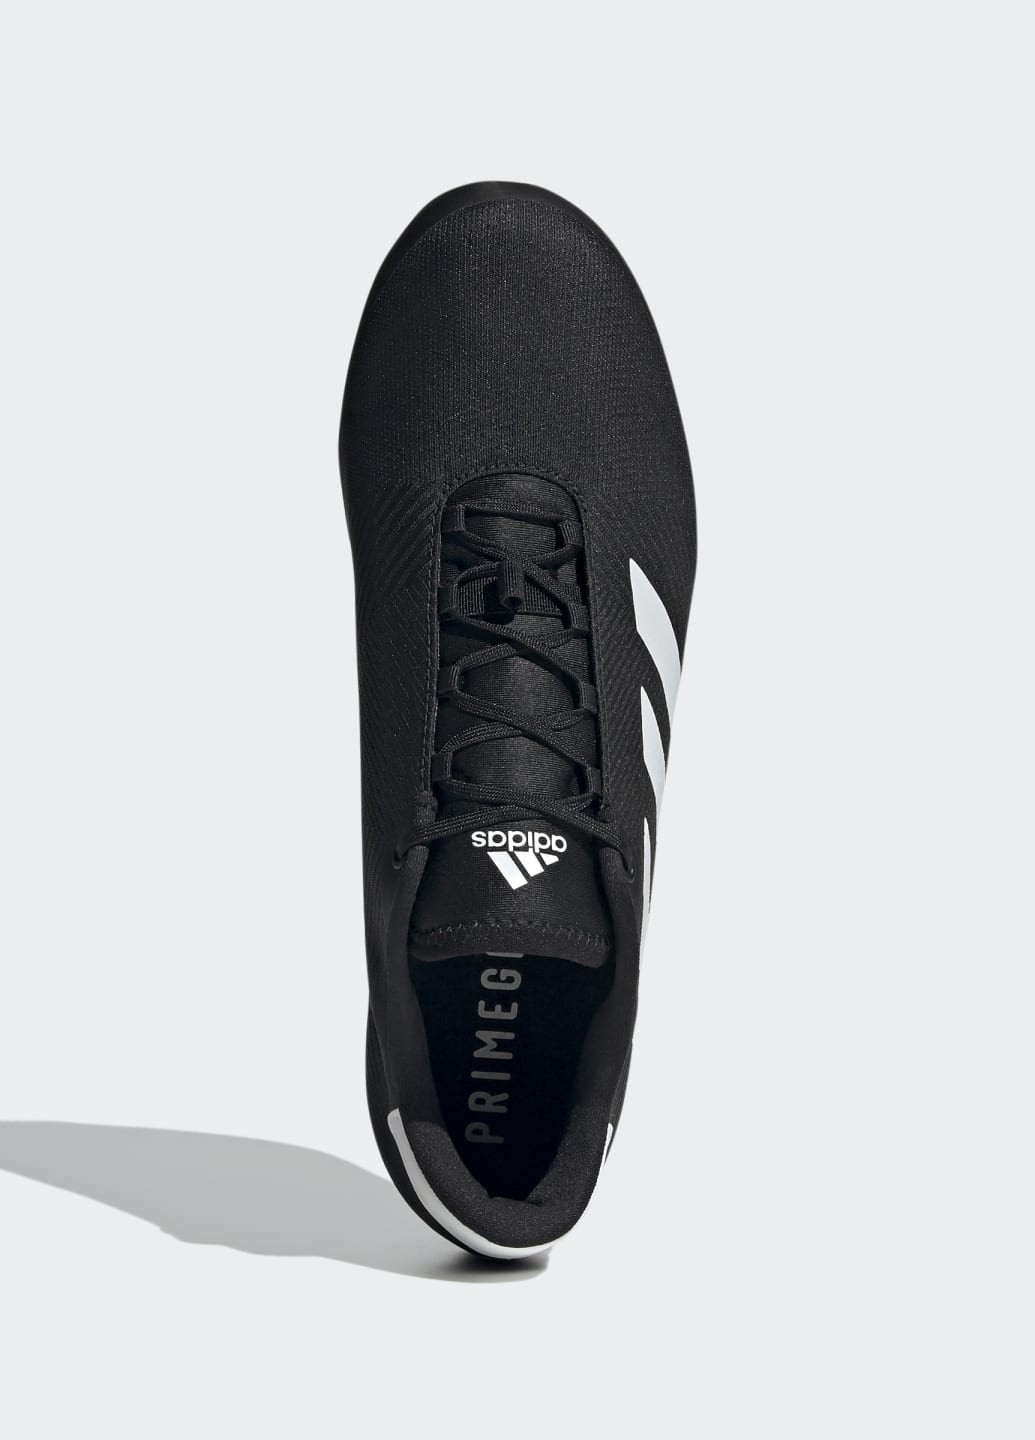 Черные всесезонные кроссовки для велоспорта the road adidas